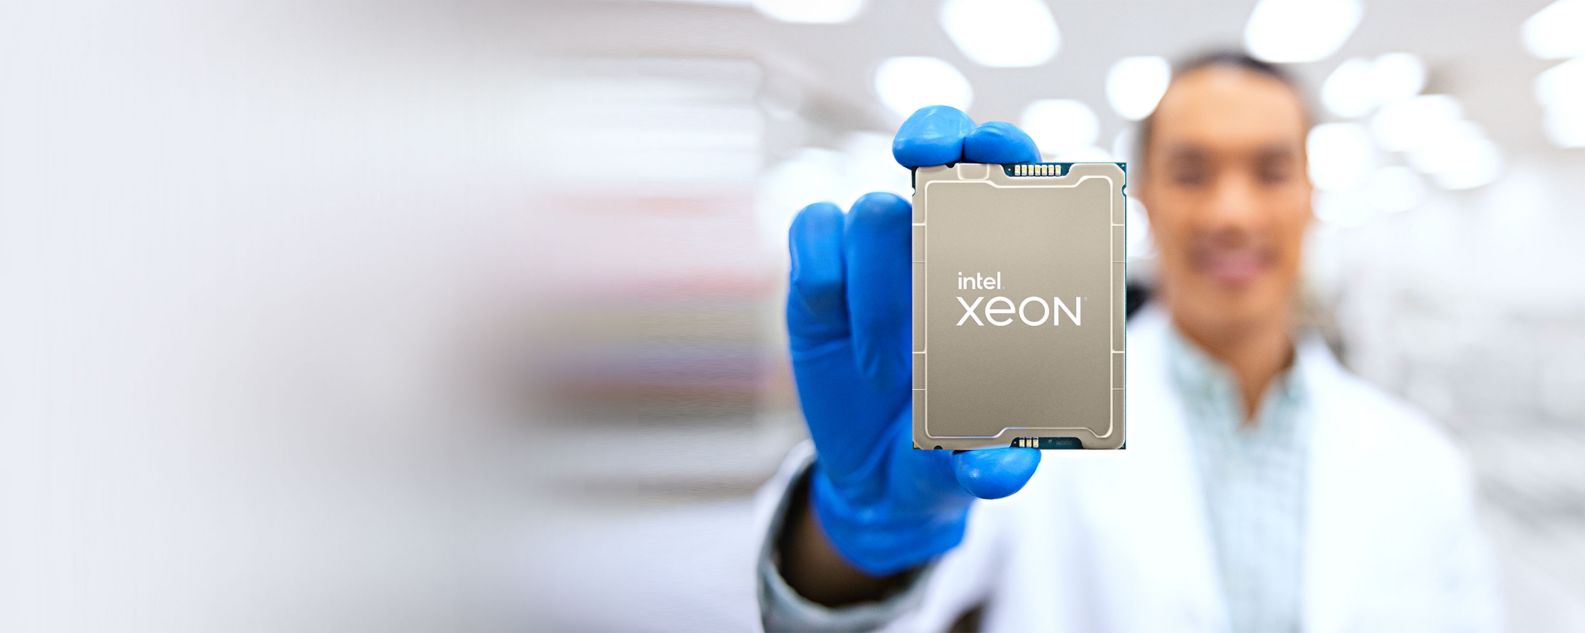 Technicien dans un laboratoire tenant un processeurs Intel Xeon